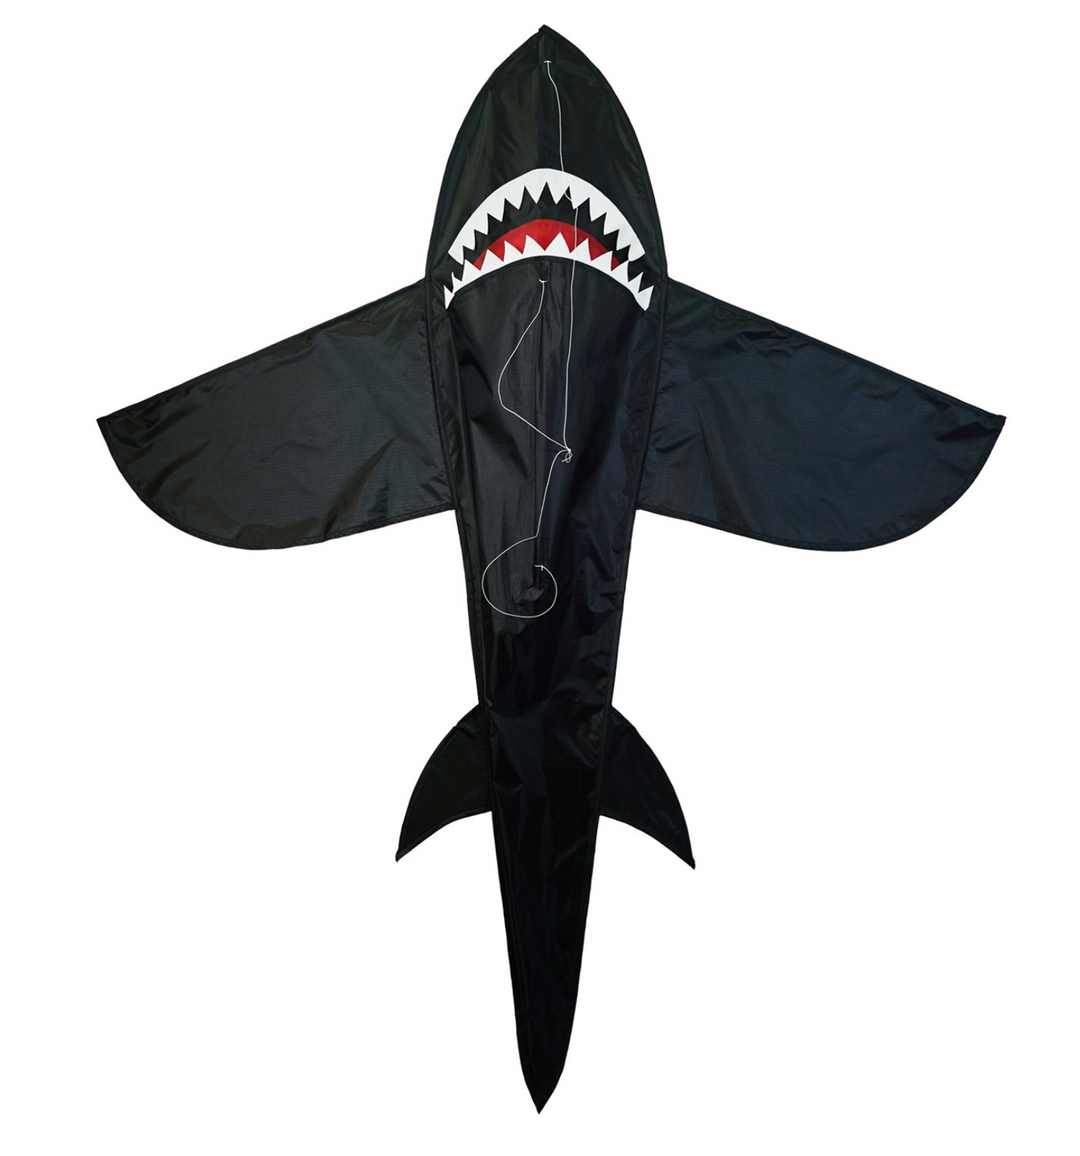 KITE-SHARK 5' BLACK